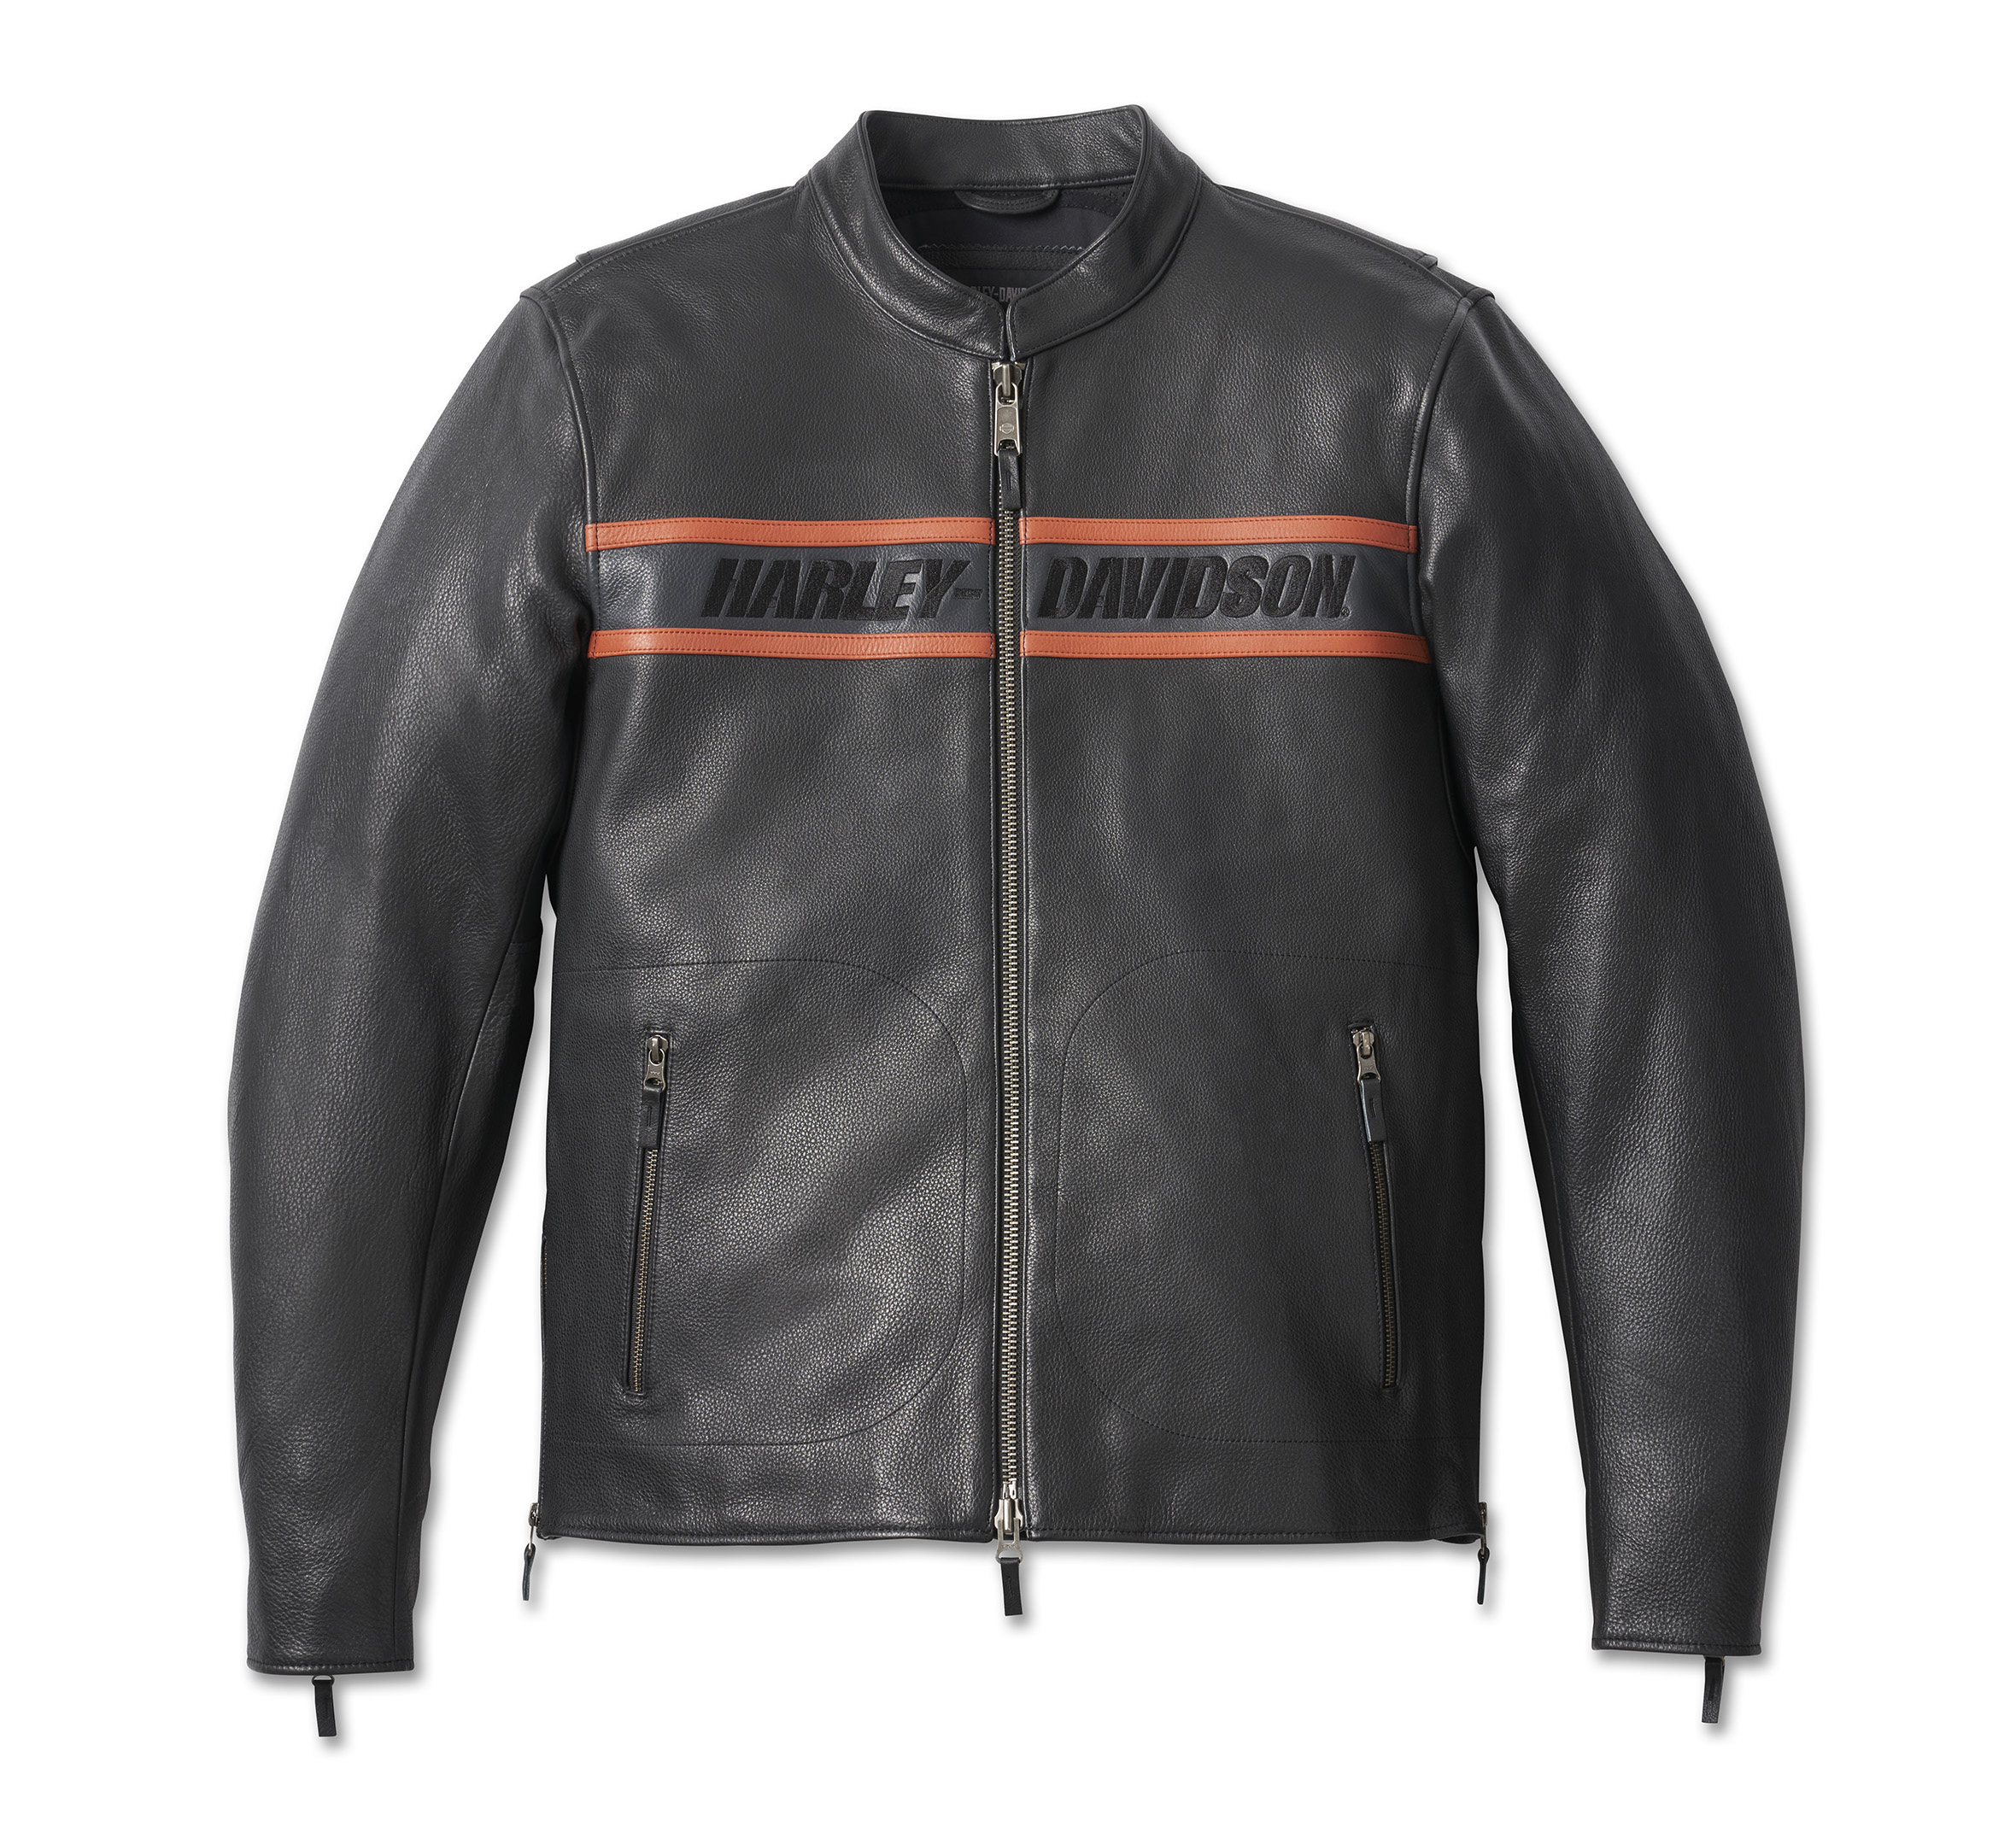 Buy Harley Davidson Leather Jacket - Jacketshaven - Medium